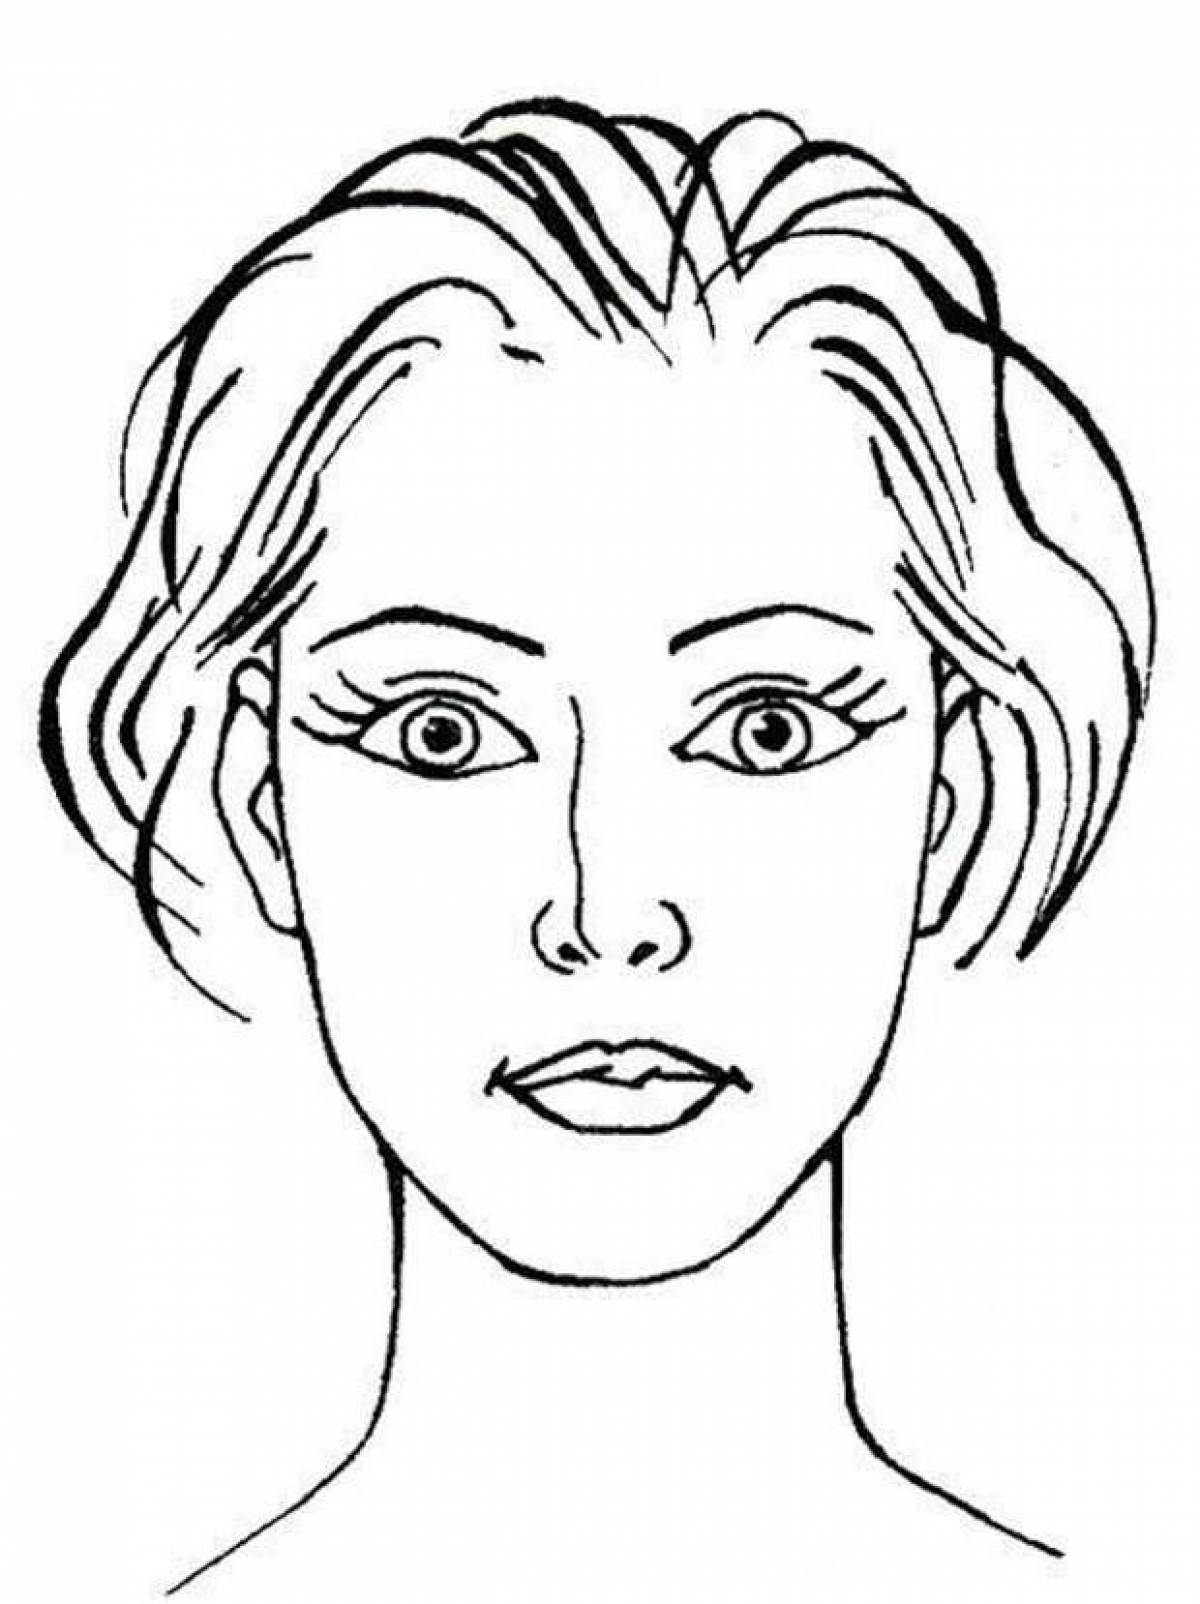 Схематичный рисунок лица